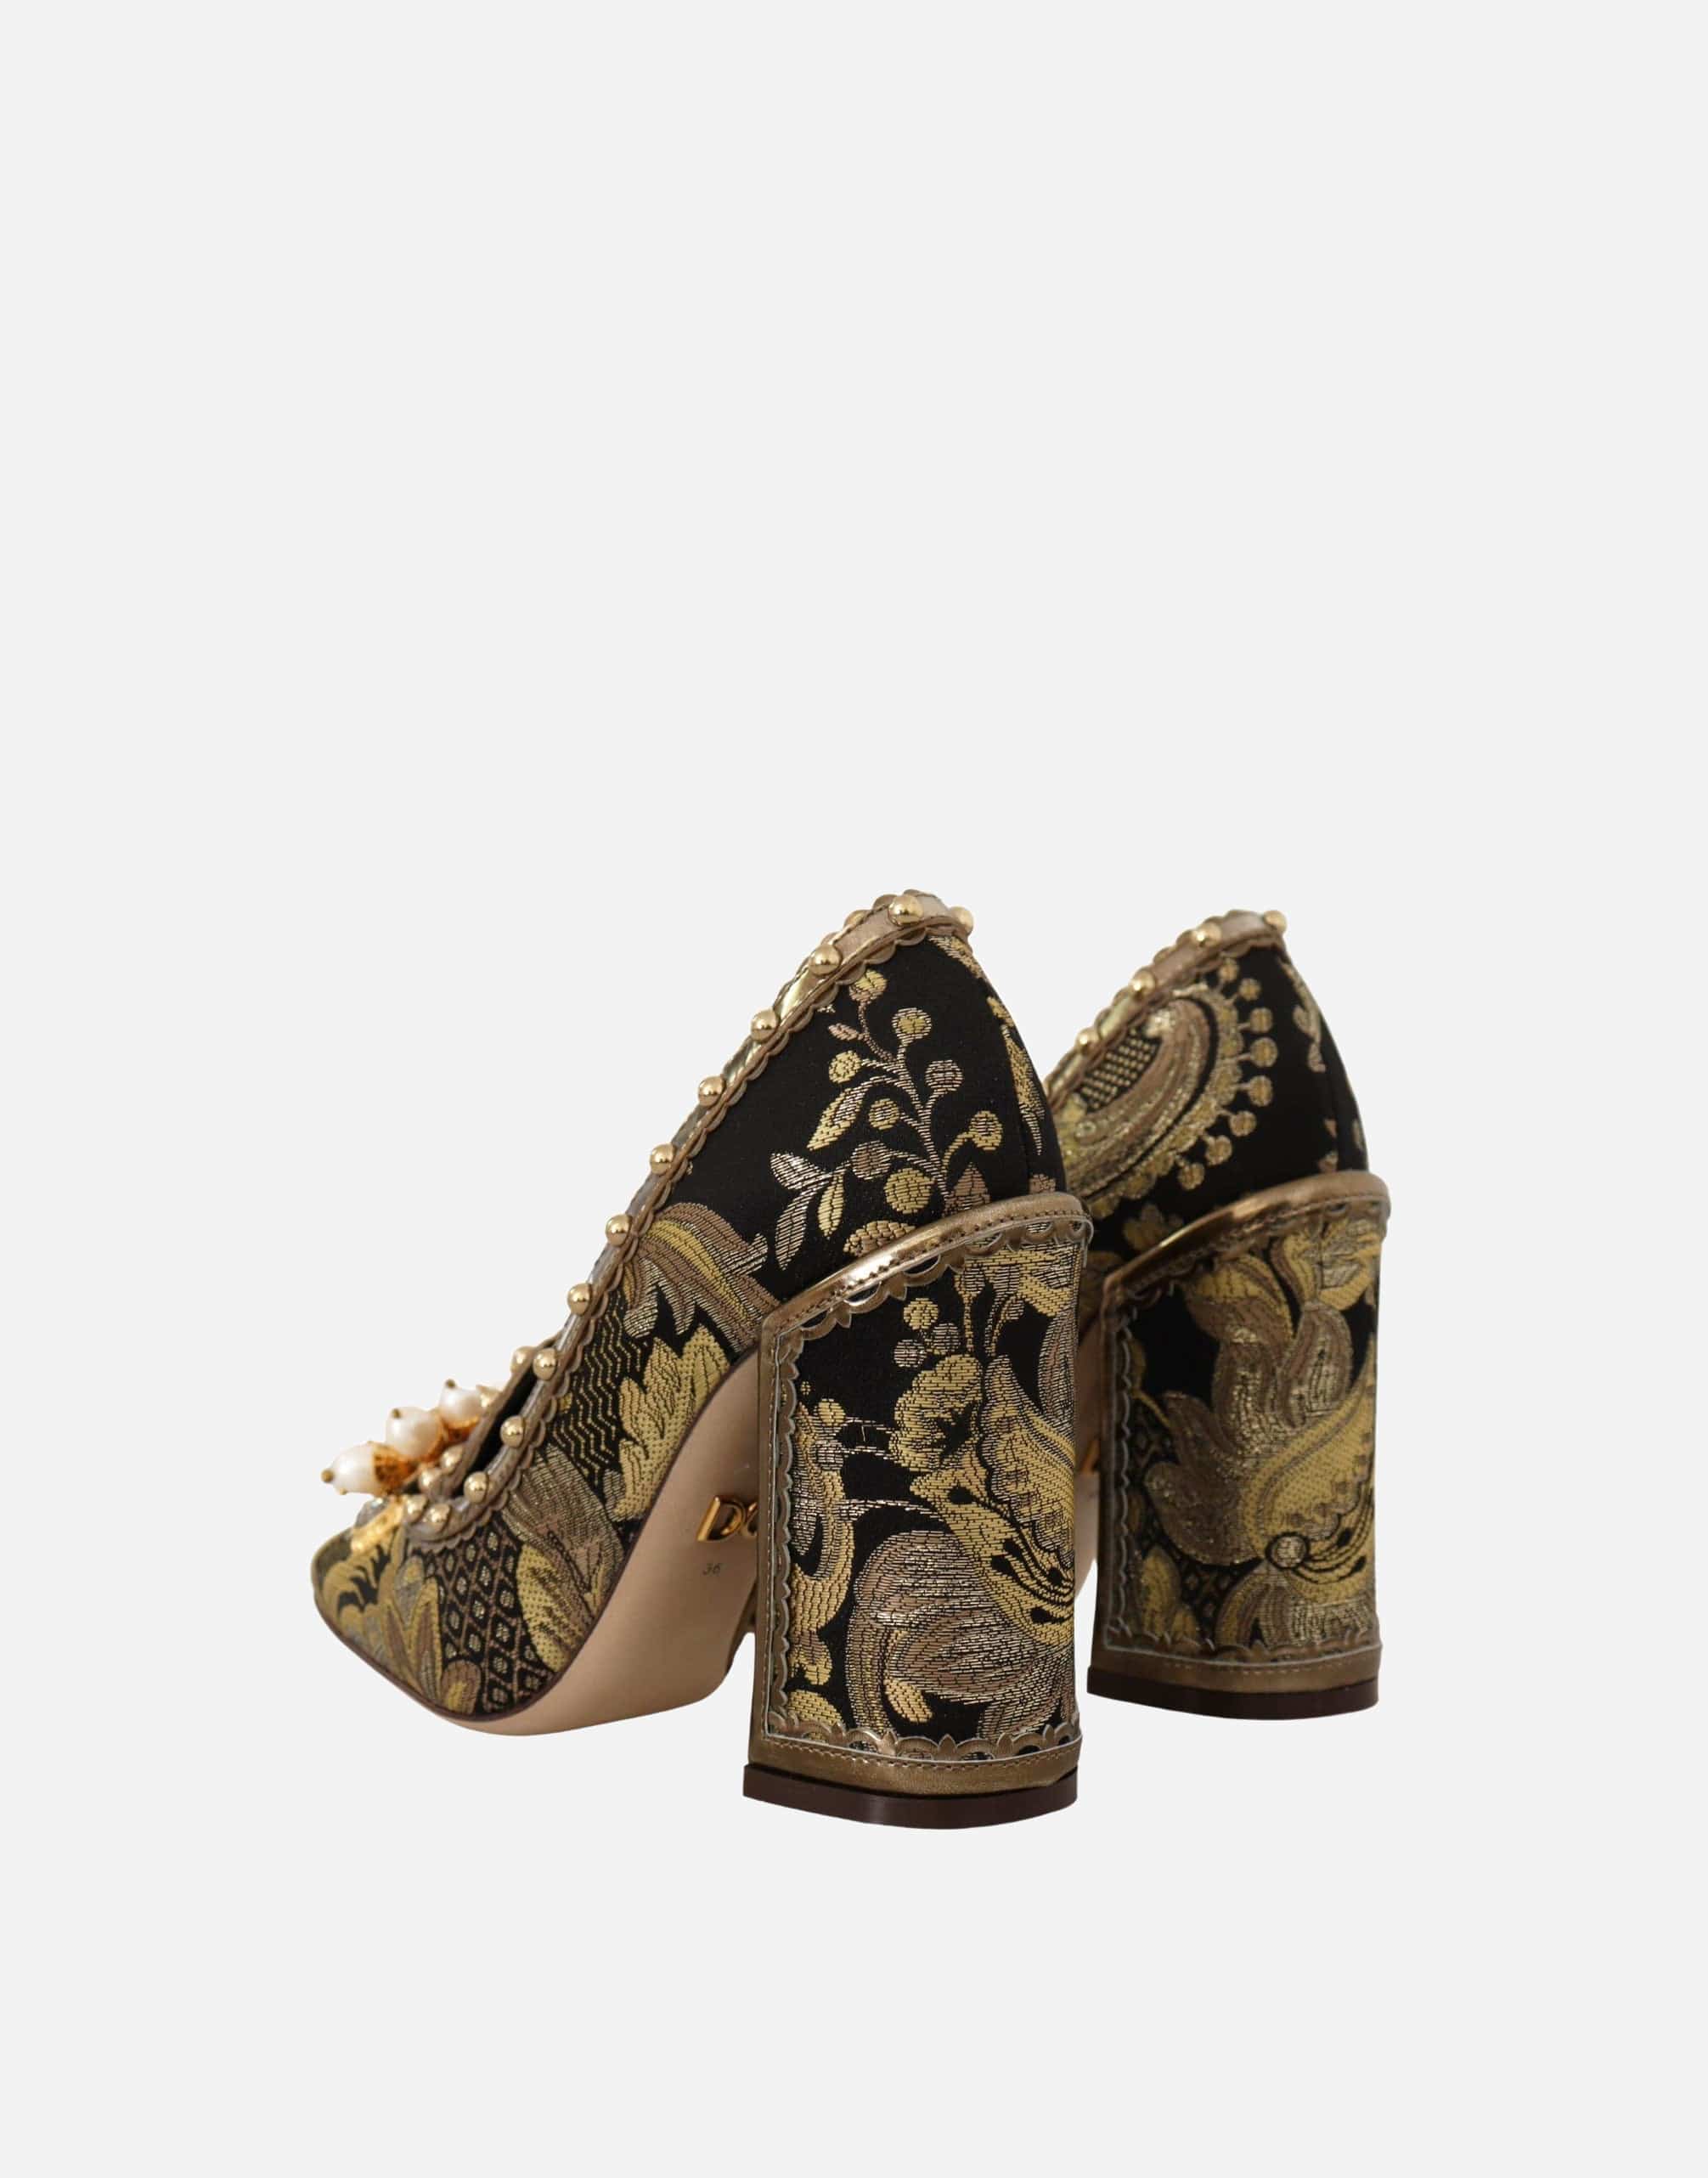 Dolce & Gabbana Dolce & Gabbana Crystal Embellished Square Toe Brocade Sandals